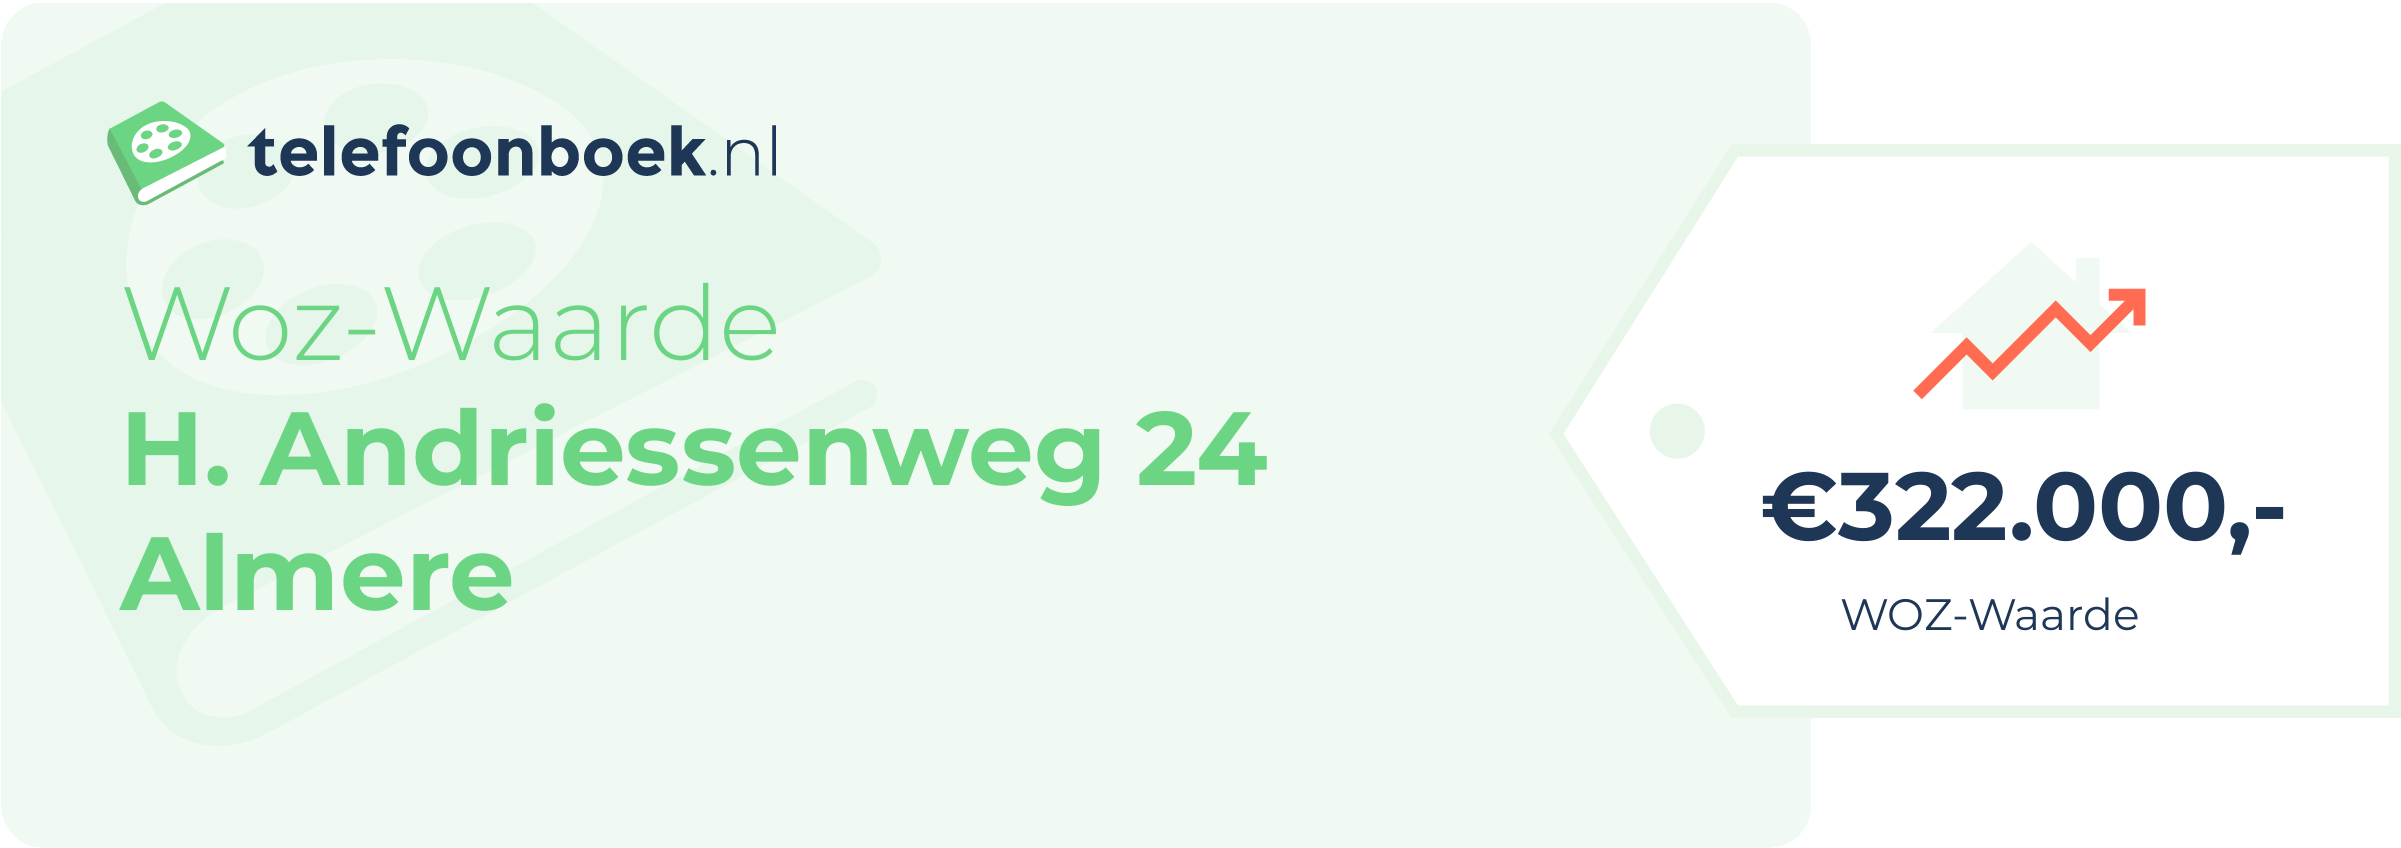 WOZ-waarde H. Andriessenweg 24 Almere